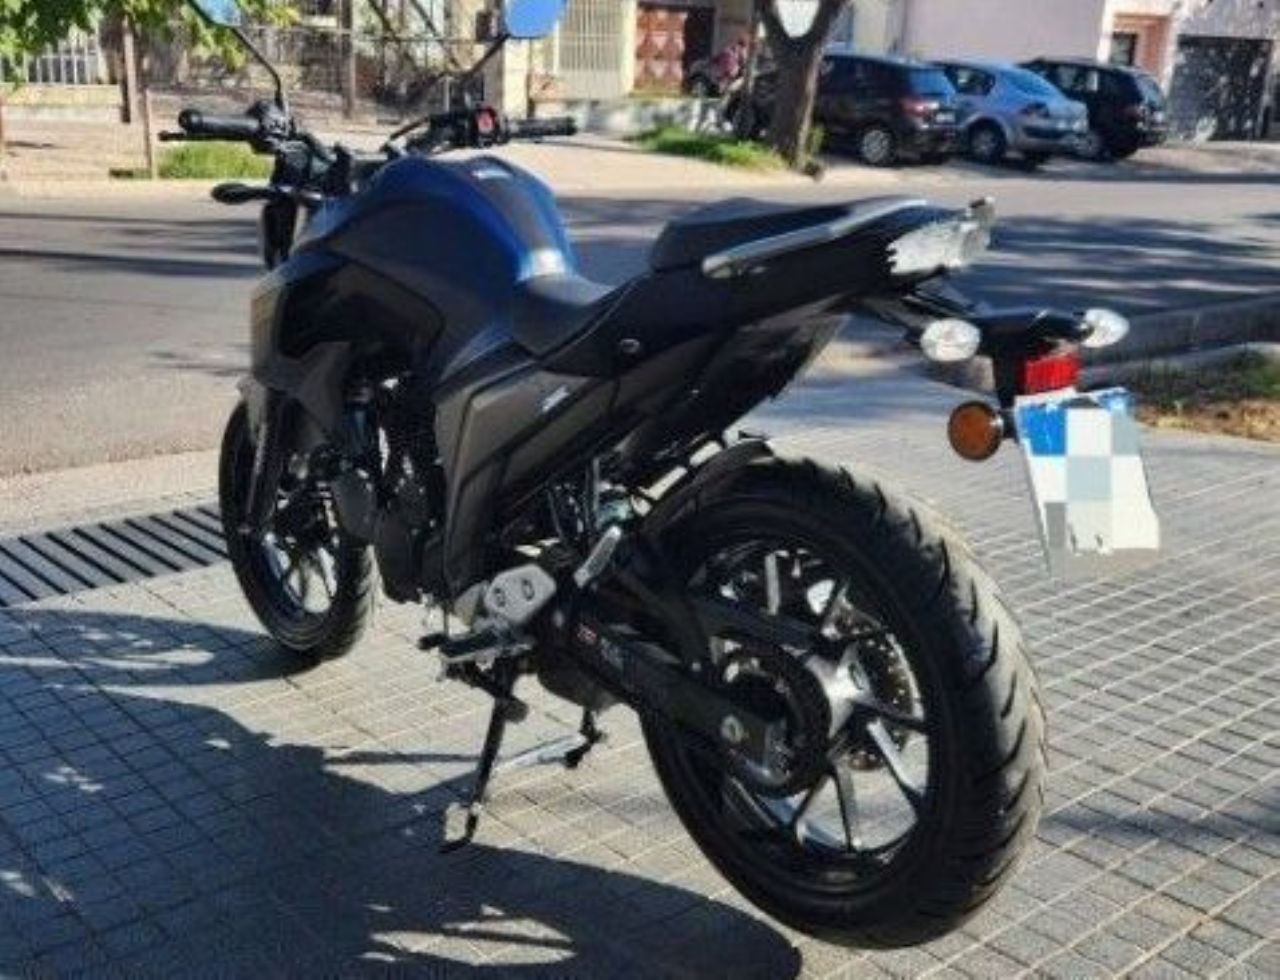 Yamaha FZ Usada en Mendoza, deRuedas